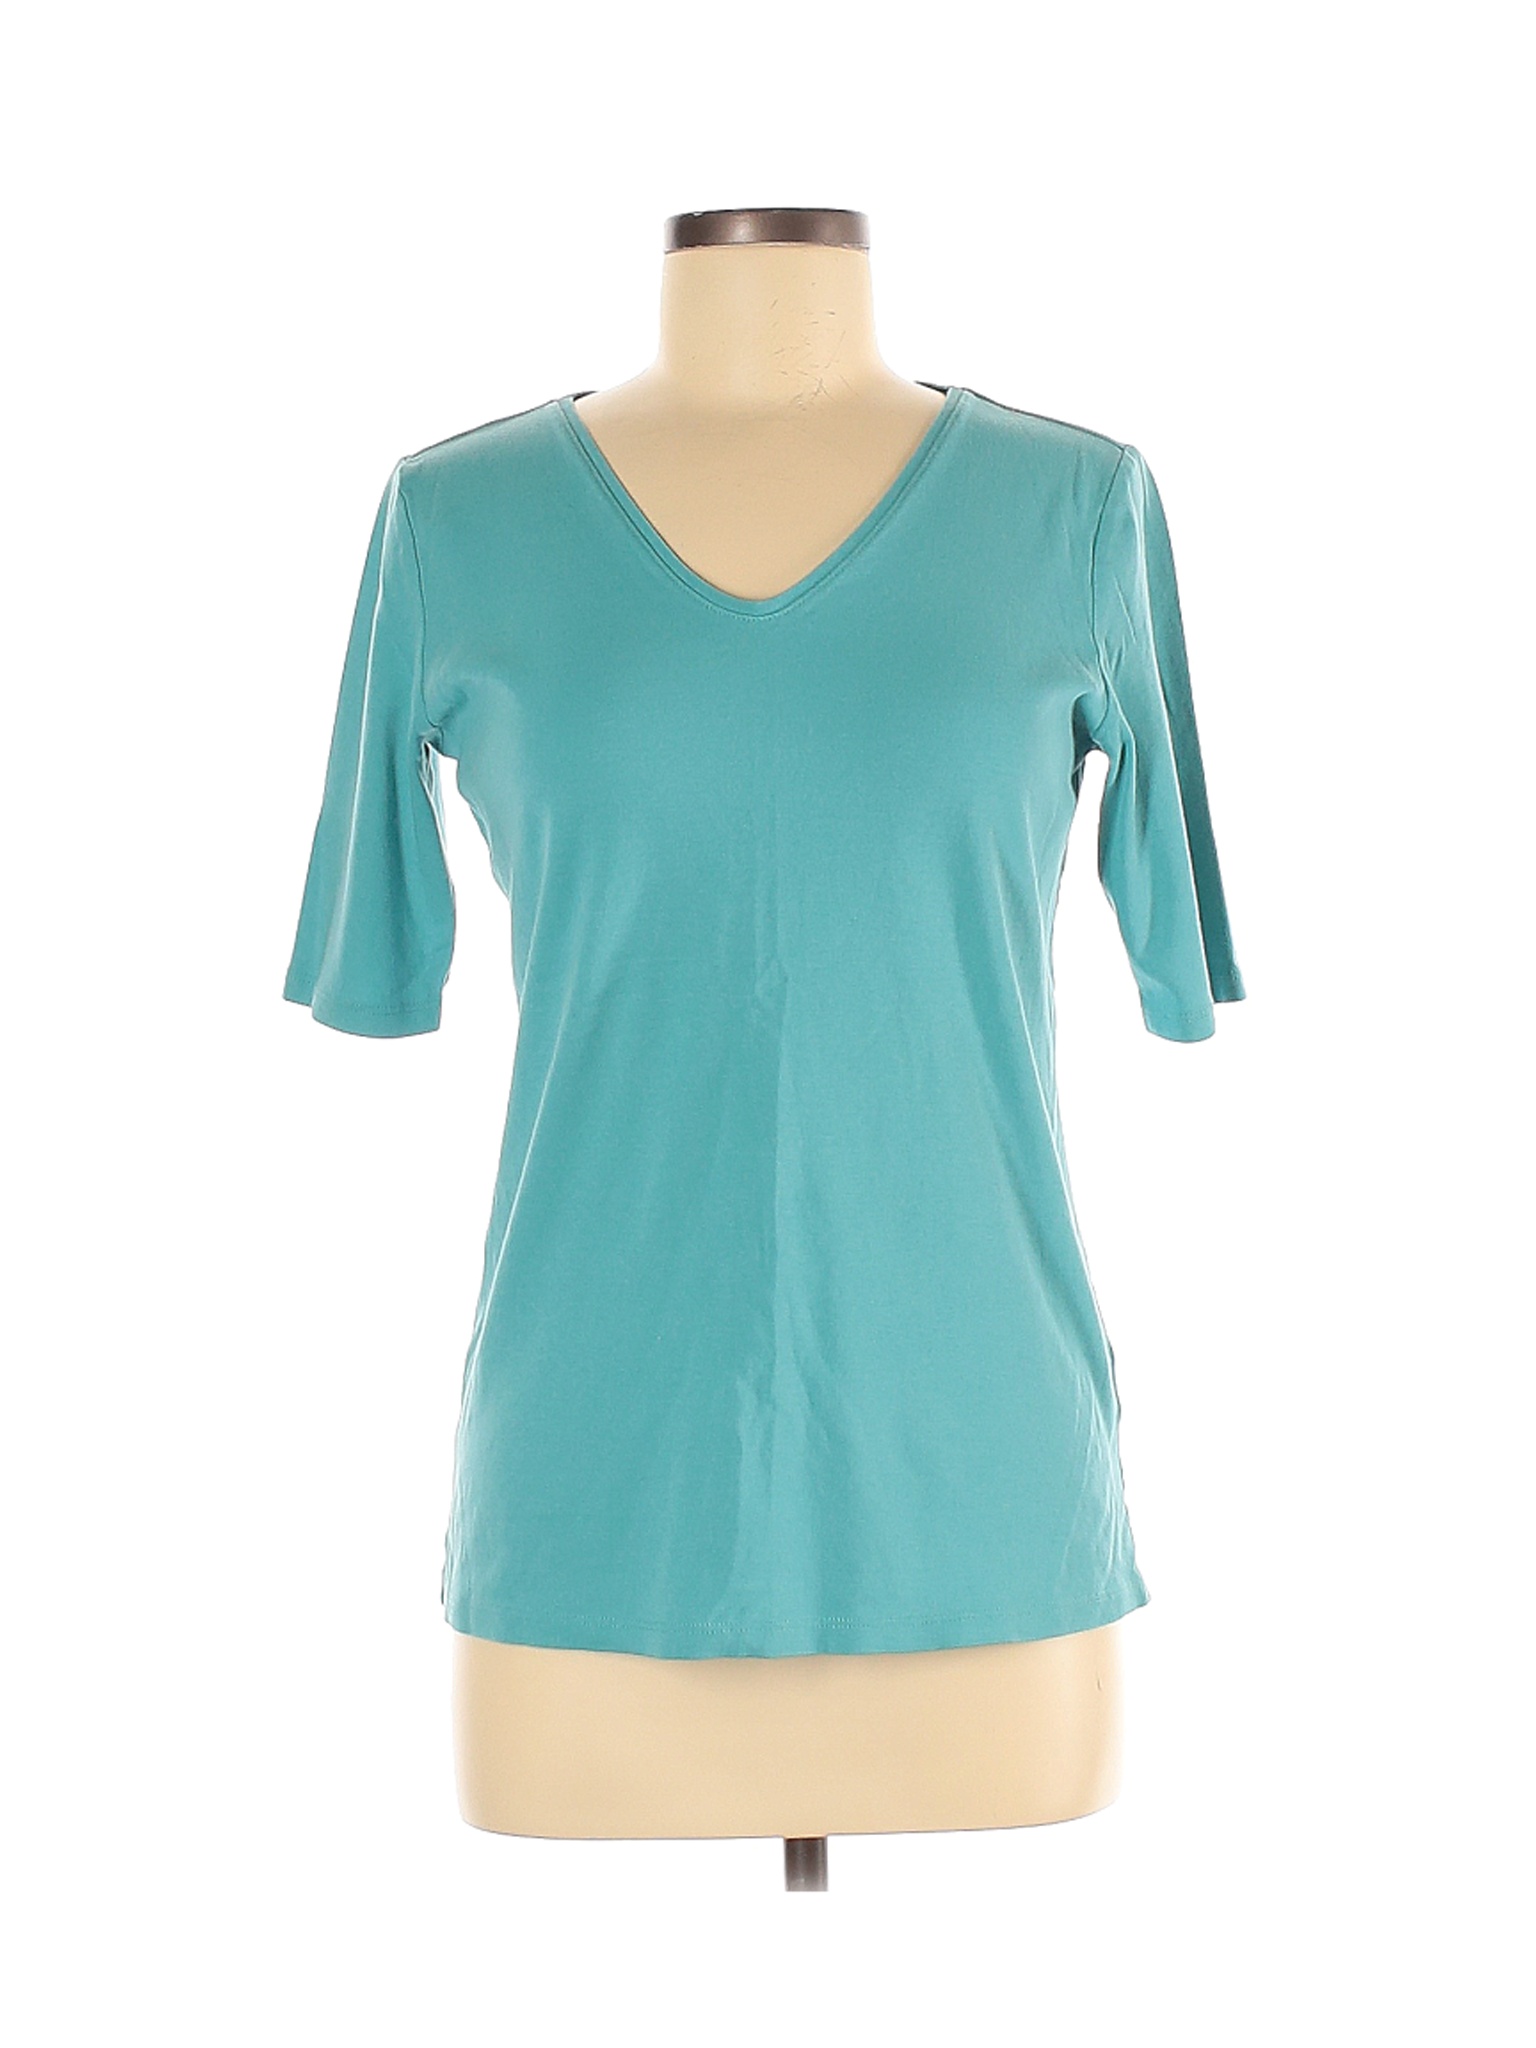 J.jill Women Blue Short Sleeve T-Shirt M | eBay